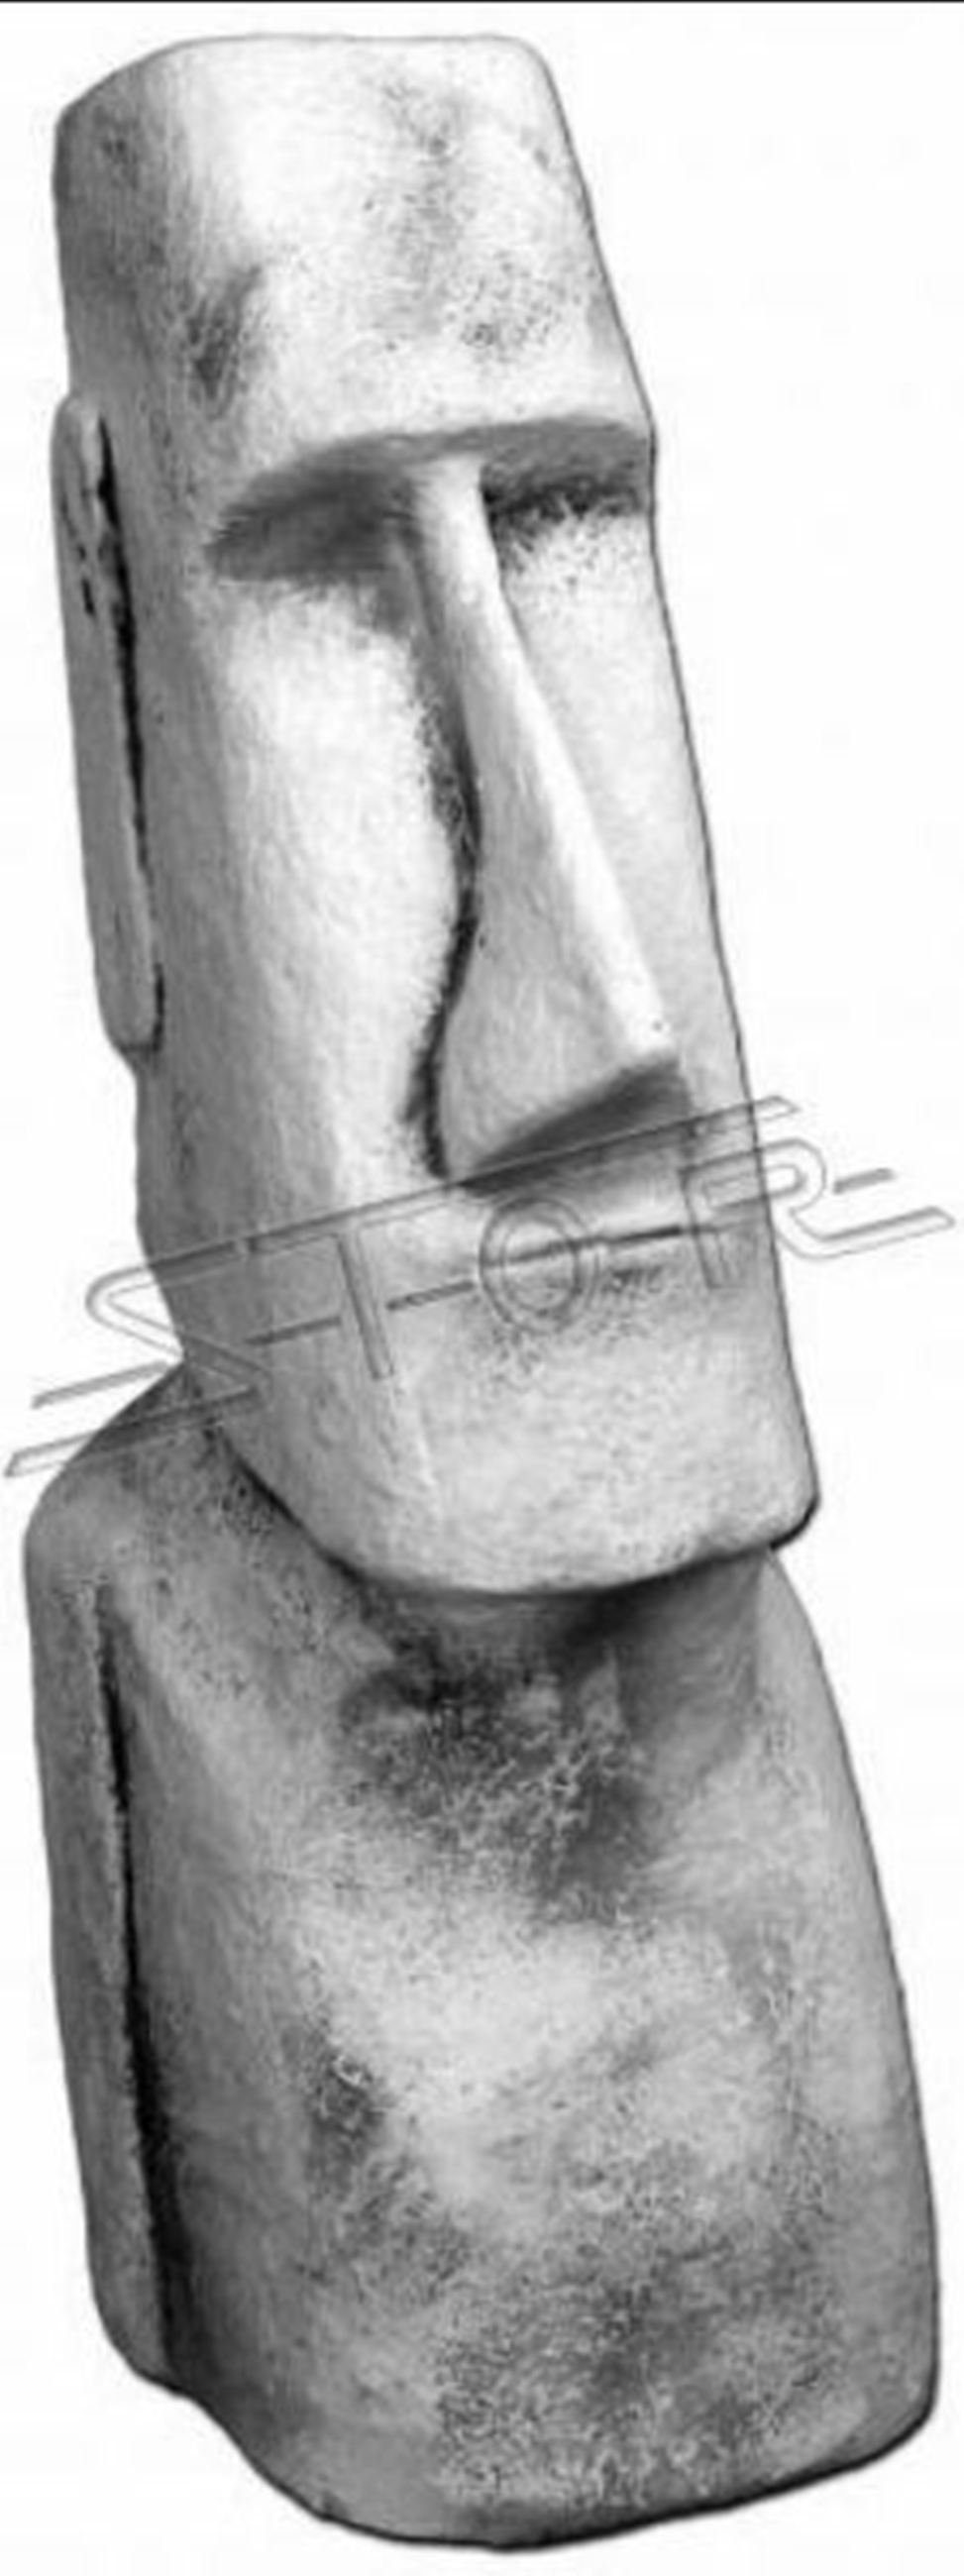 JVmoebel Moai Designer Deko Skulptur Figur Skulptur Skulpturen Terrasen Statue Garten